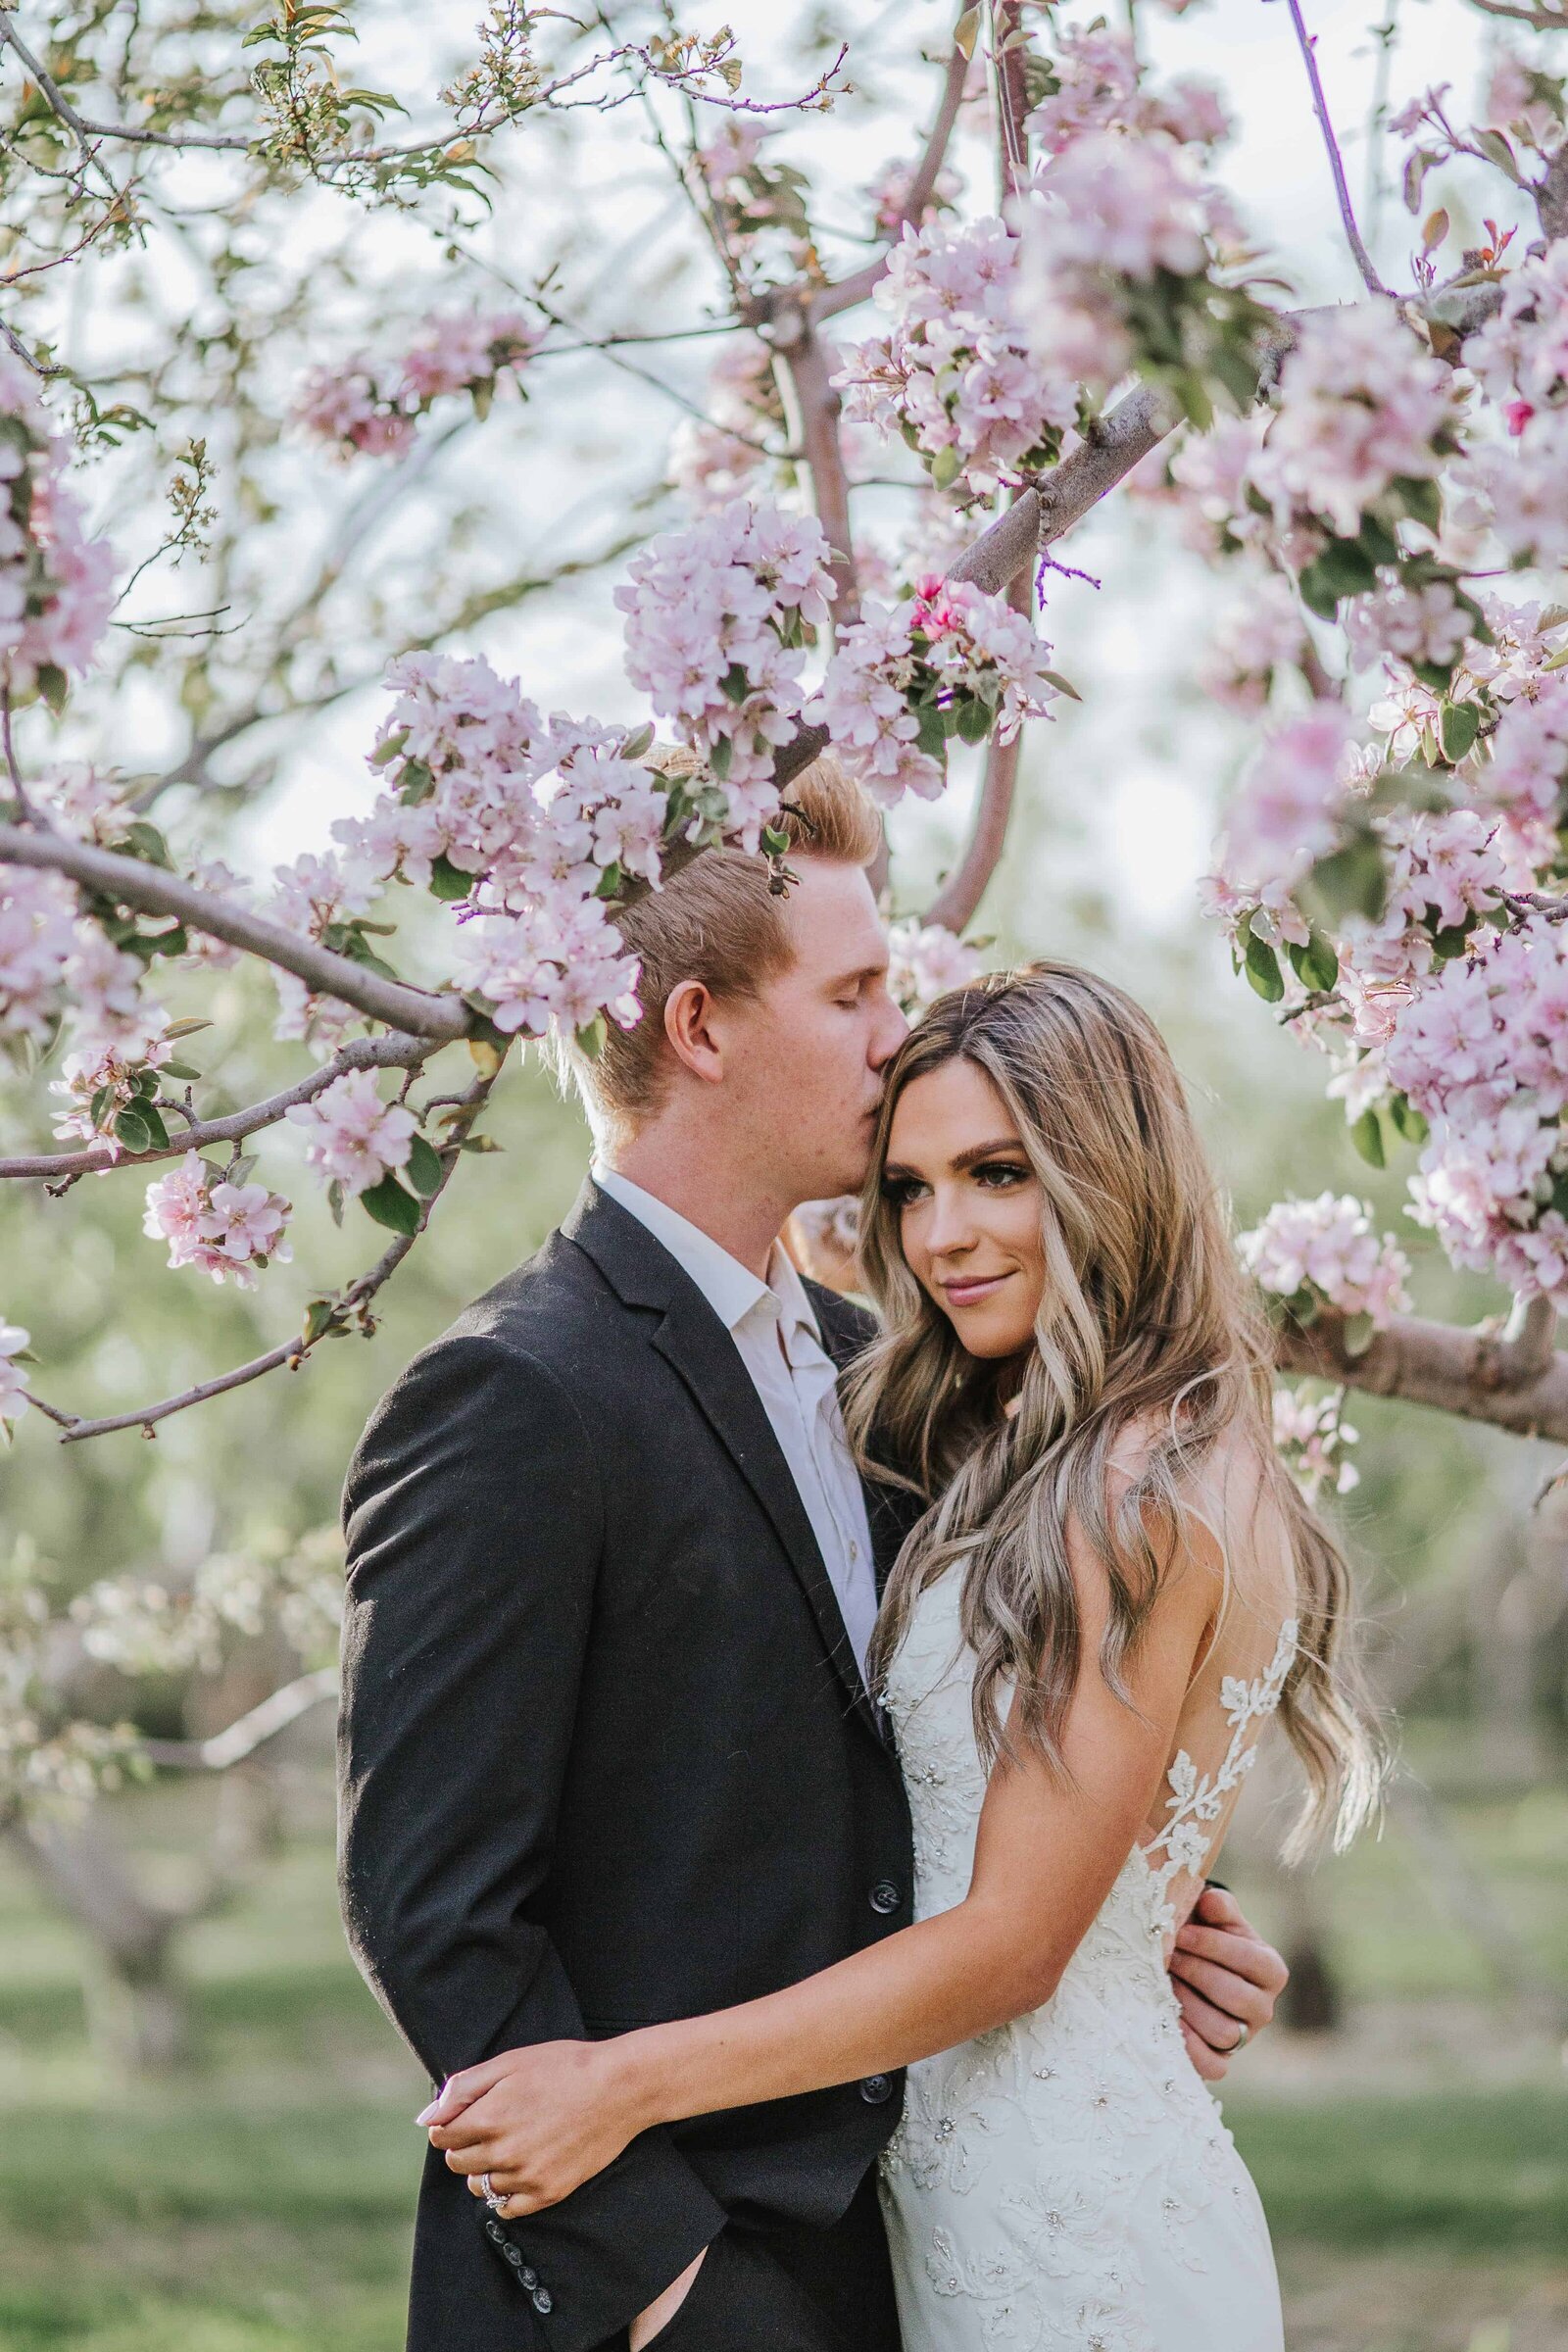 Sacramento Wedding Photographer captures couple embracing during blossom bridals